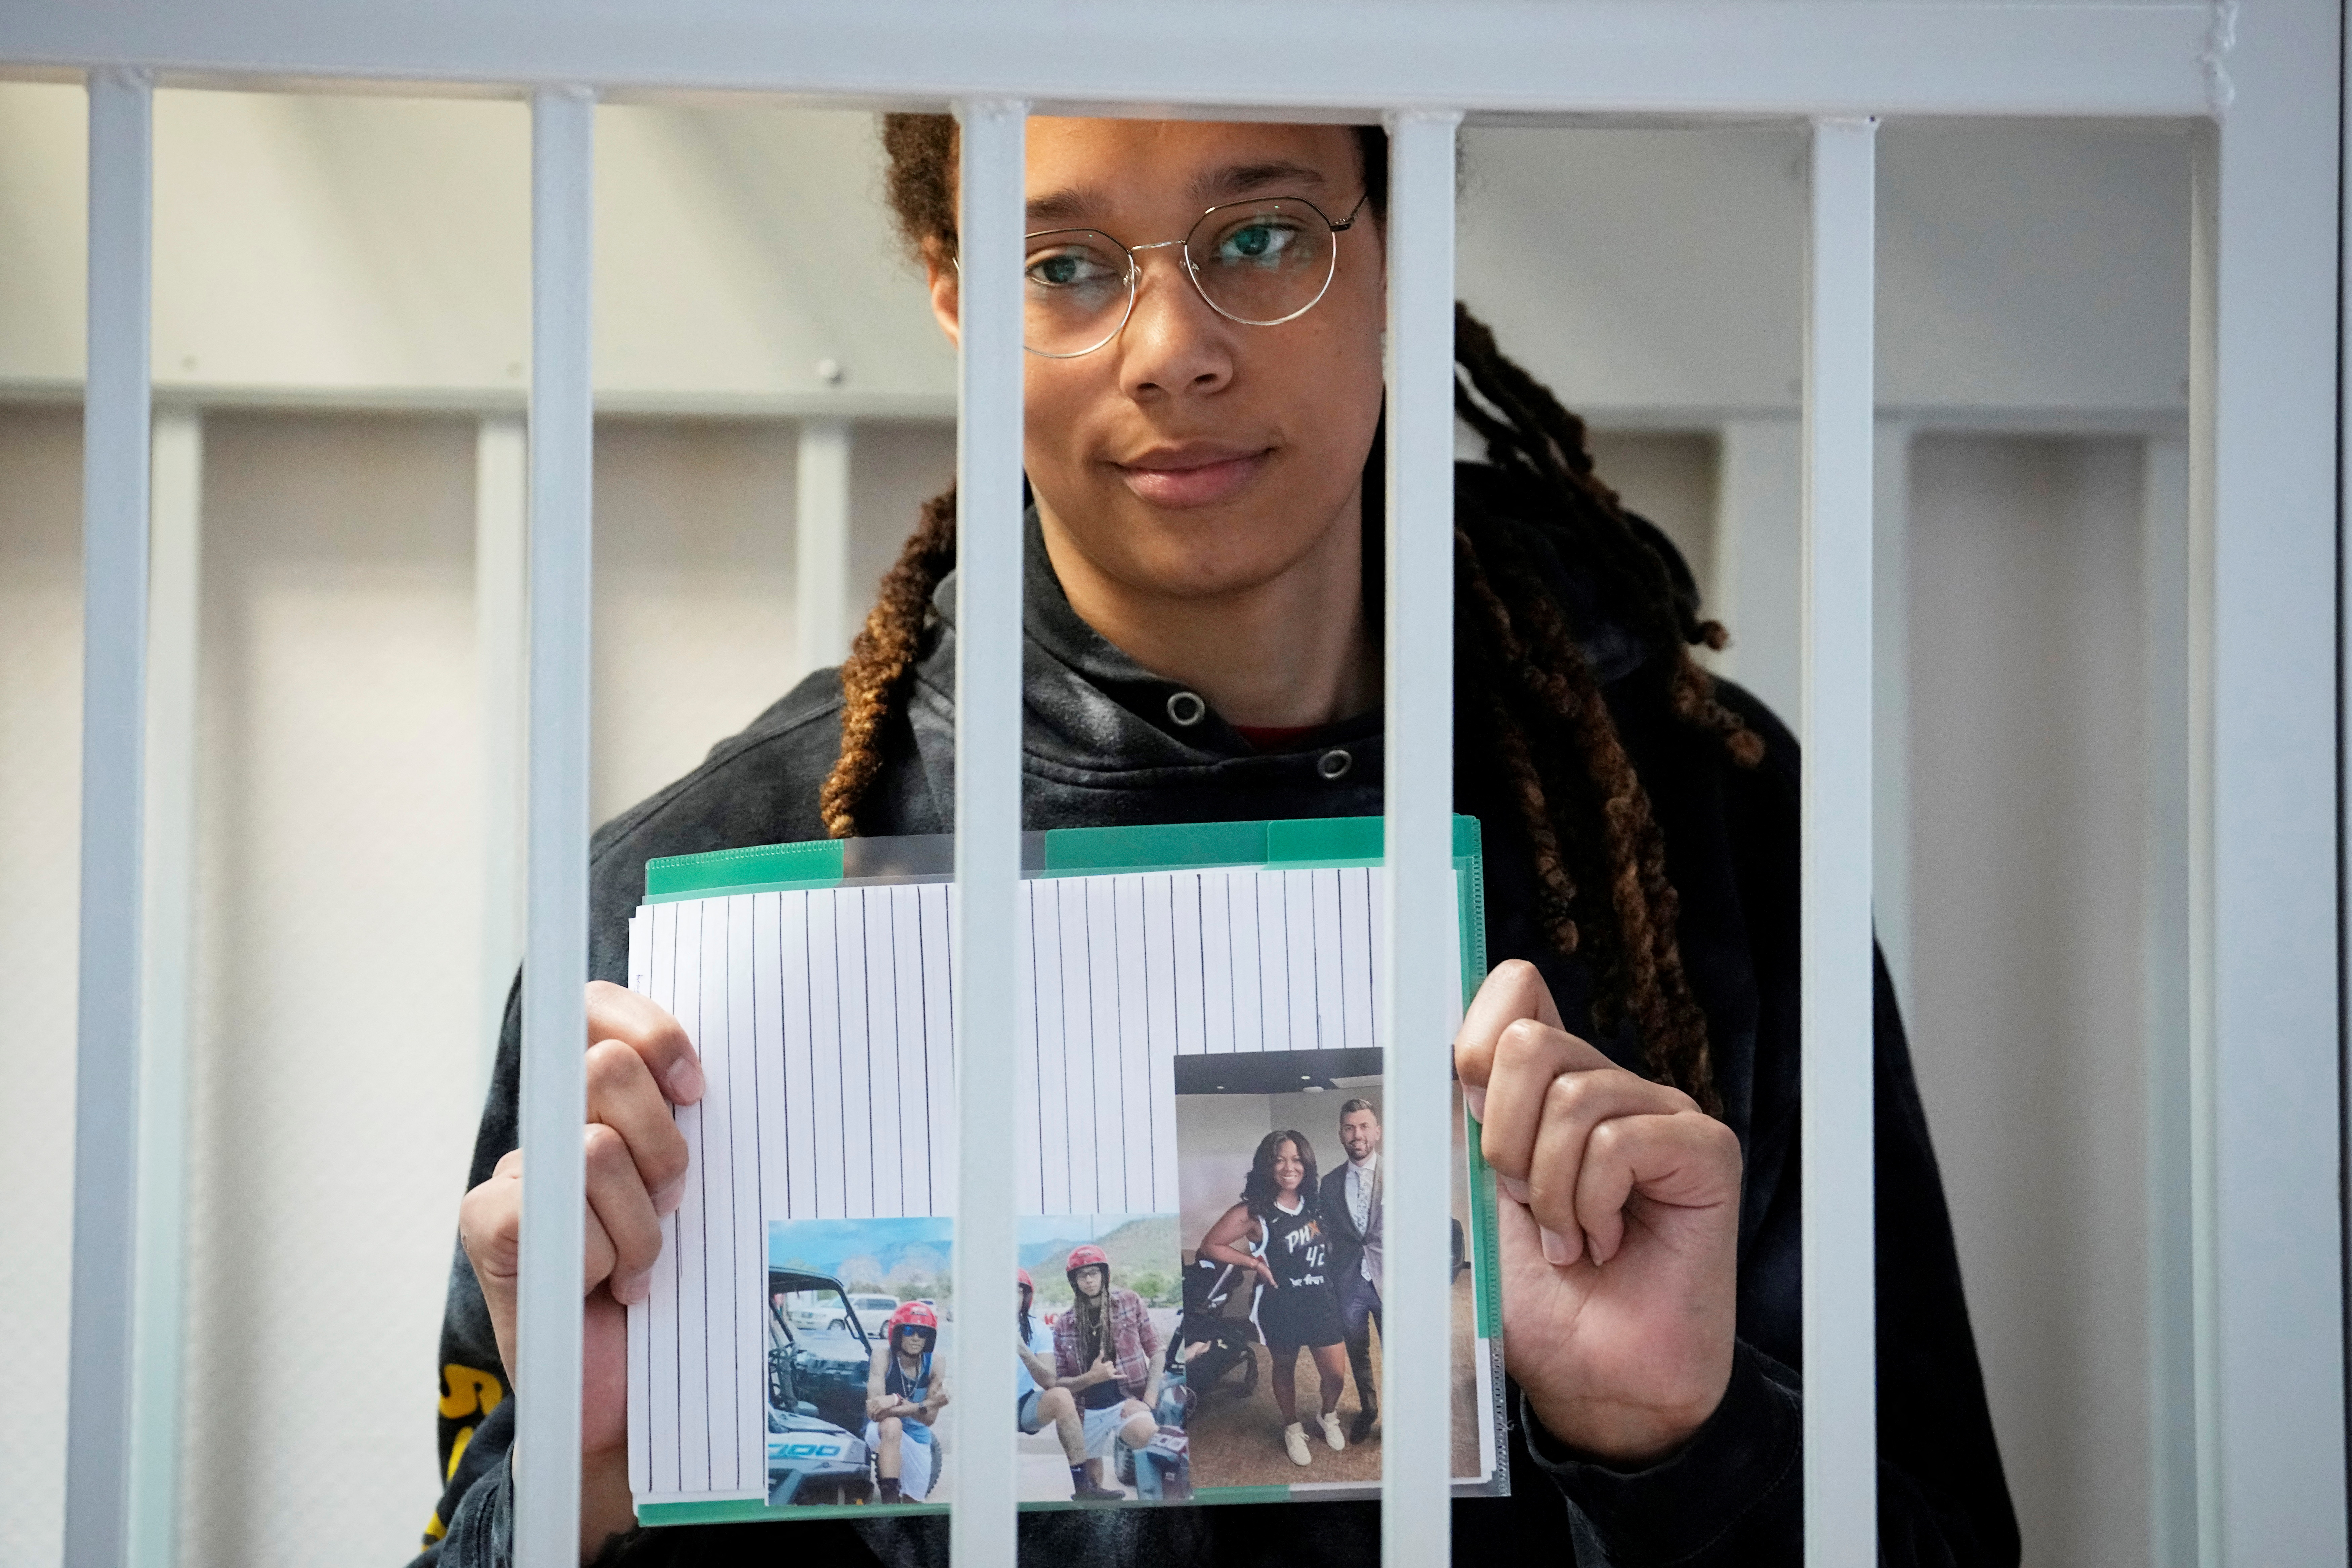 Brittney Griner sostiene imágenes de pie en una jaula en una sala de la corte antes de una audiencia, en Khimki a las afueras de Moscú, Rusia, 26 de julio de 2022. Alexander Zemlianichenko/Pool vía REUTERS